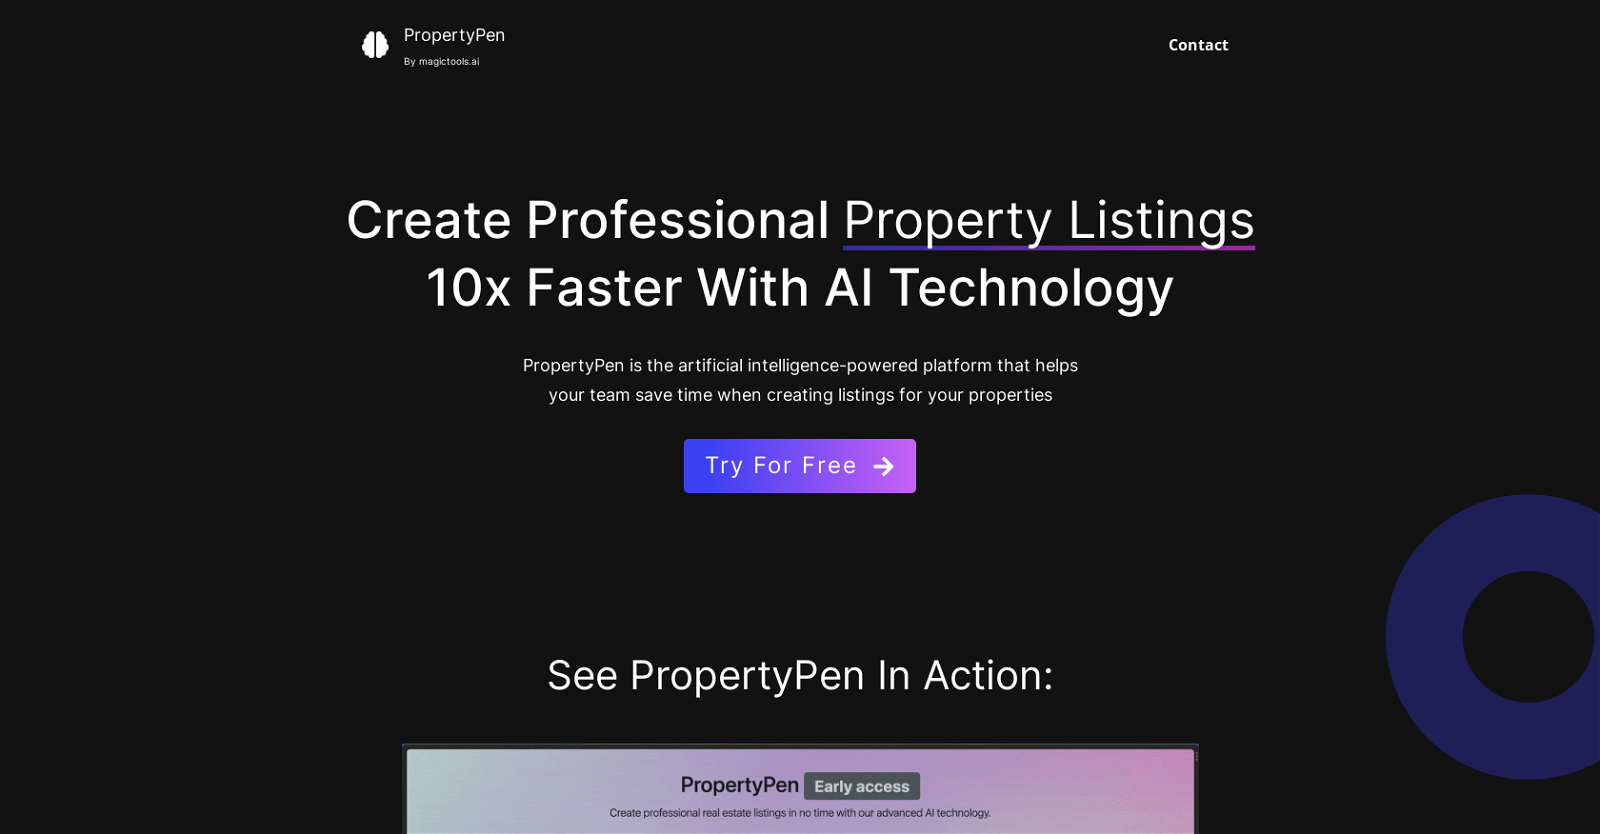 PropertyPen website